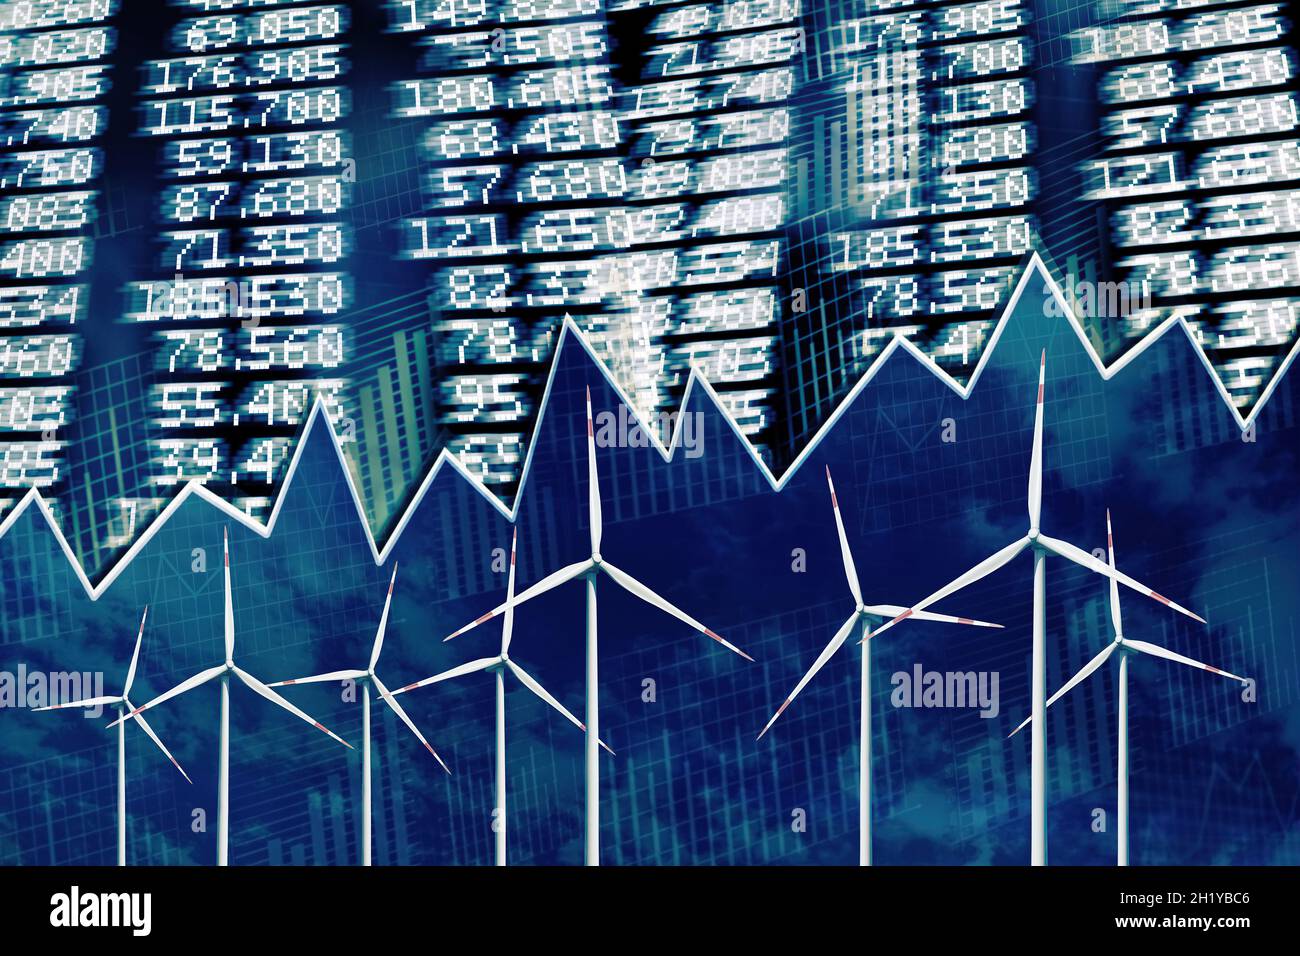 Windenergieanlagen mit Preistafel, Aktienkursen und Diagrammen Stockfoto